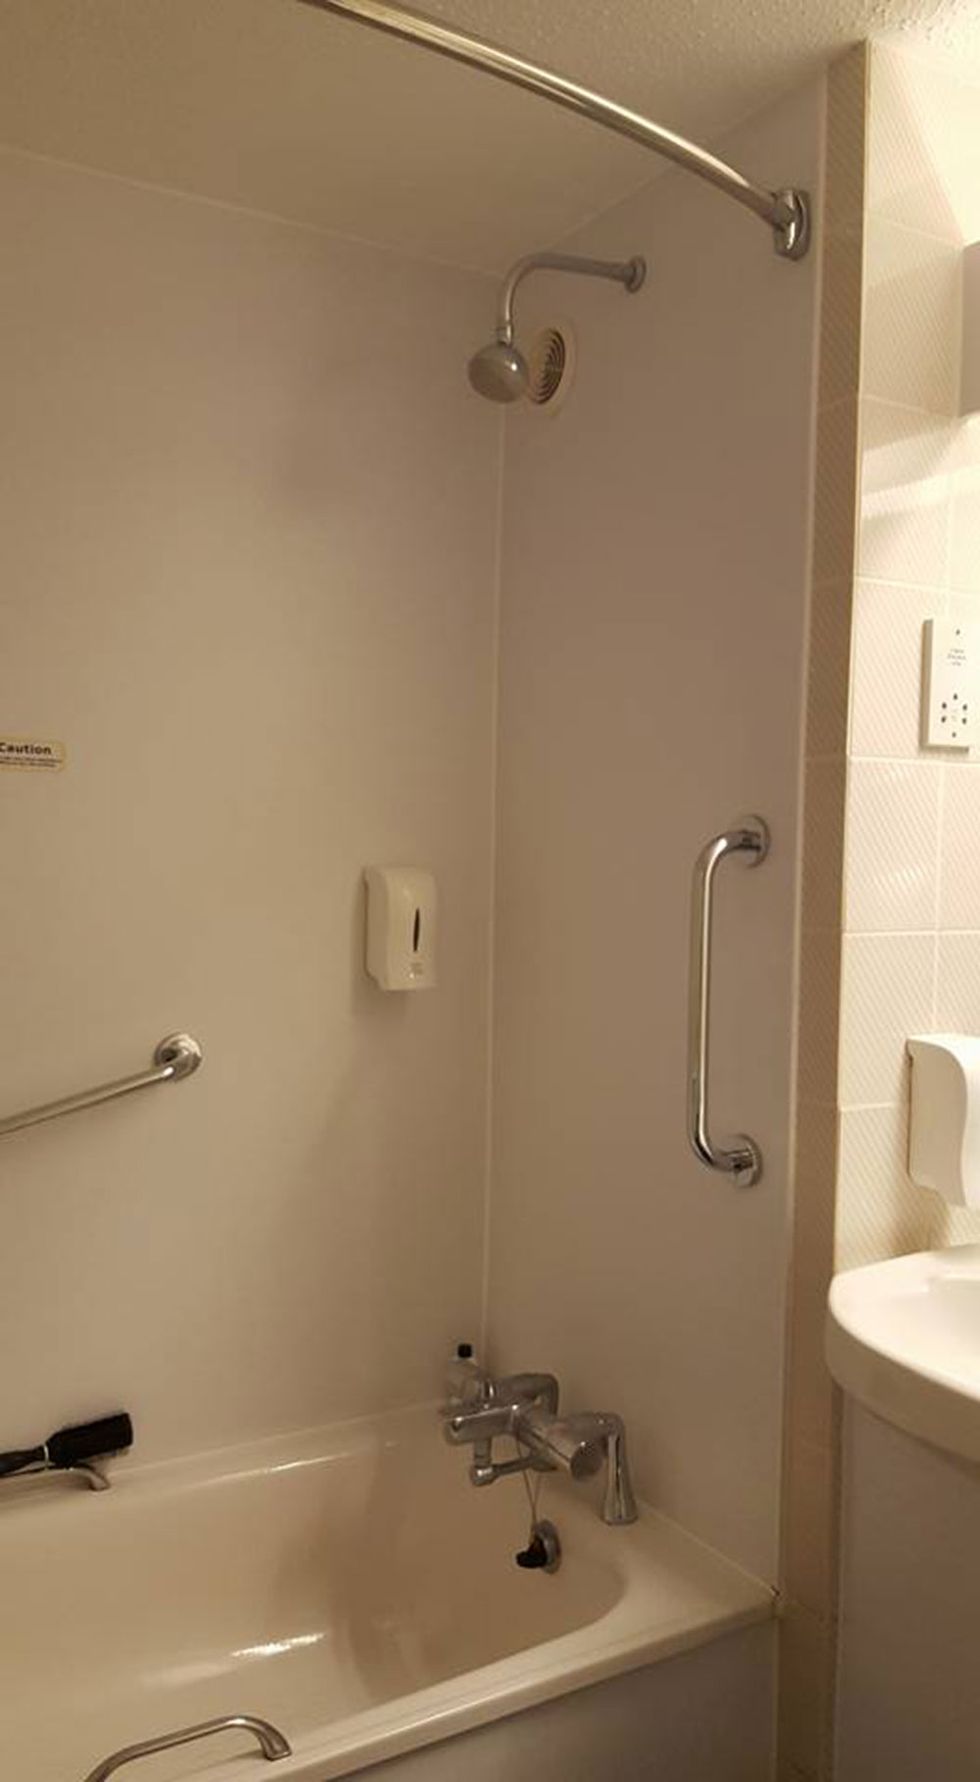 corey sanford add photo hidden camera in shower